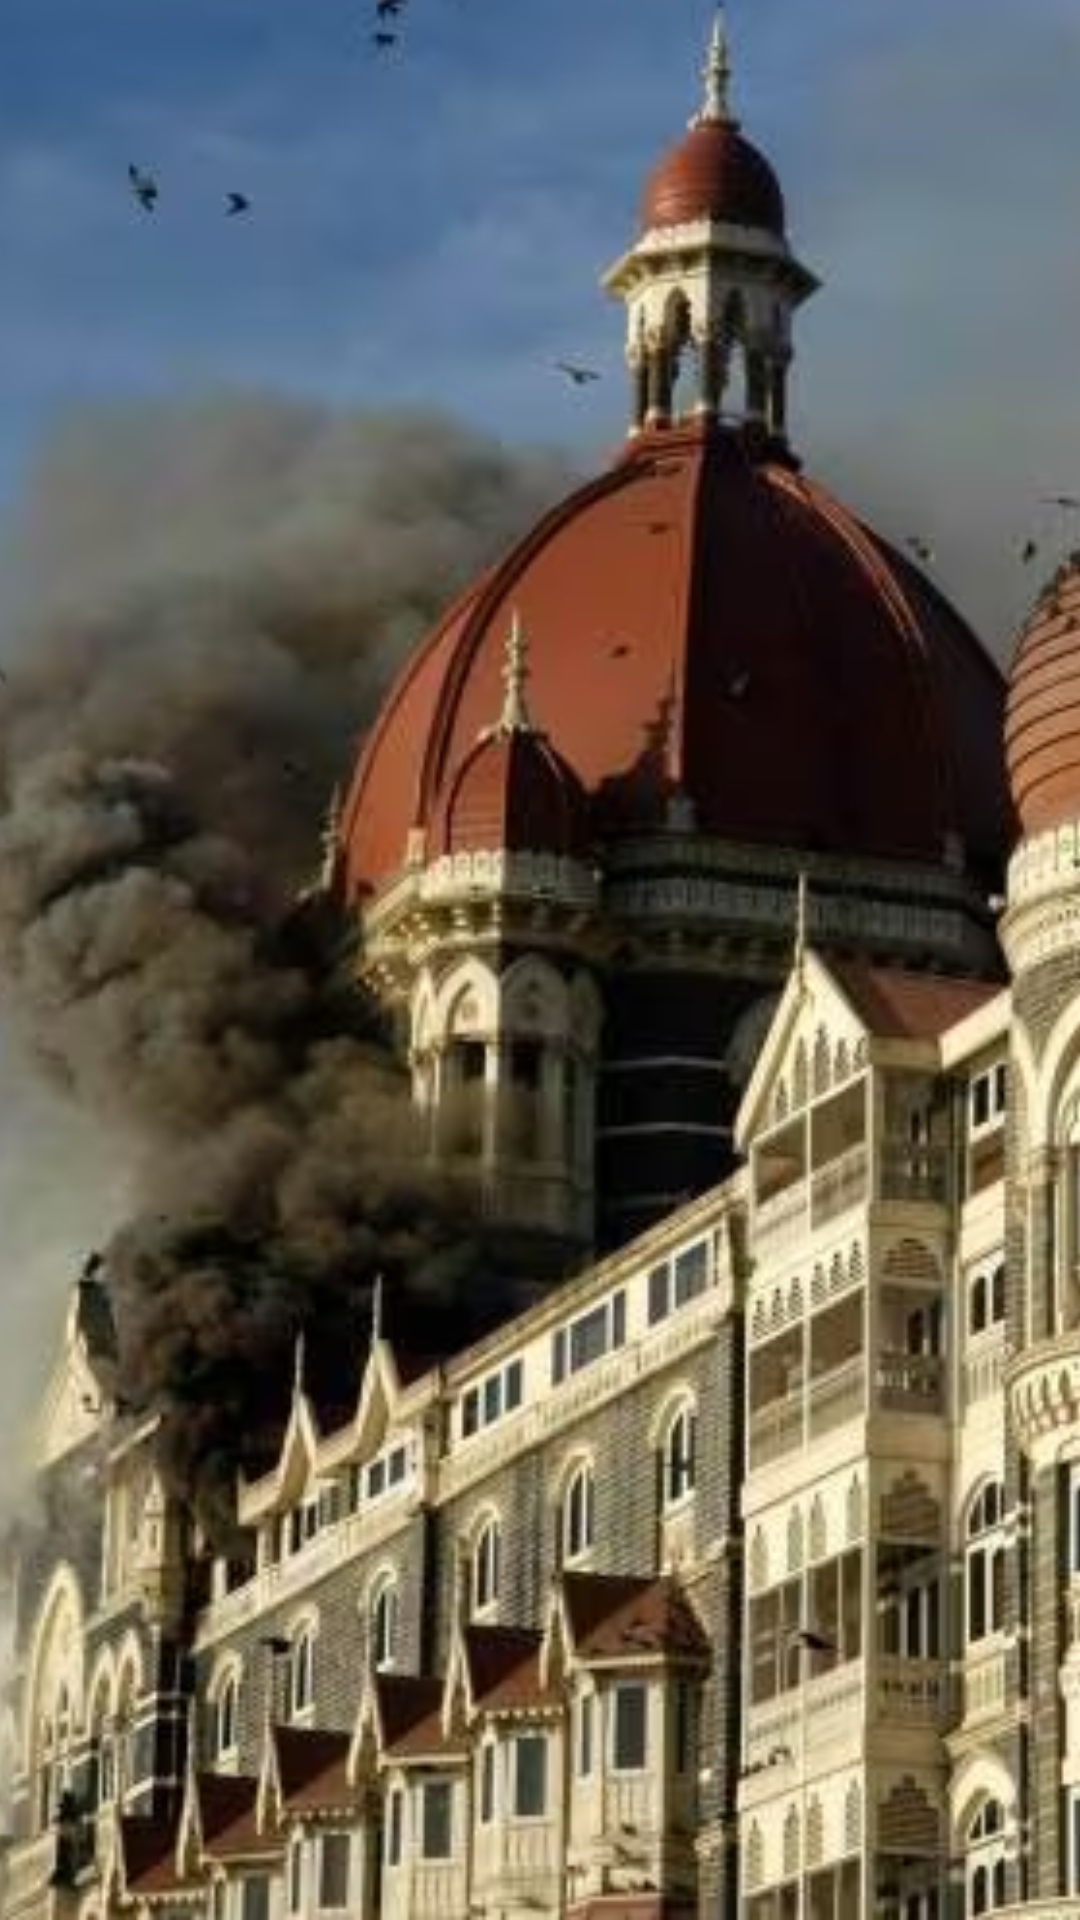 Movies based on 26/11 Mumbai Terror Attacks